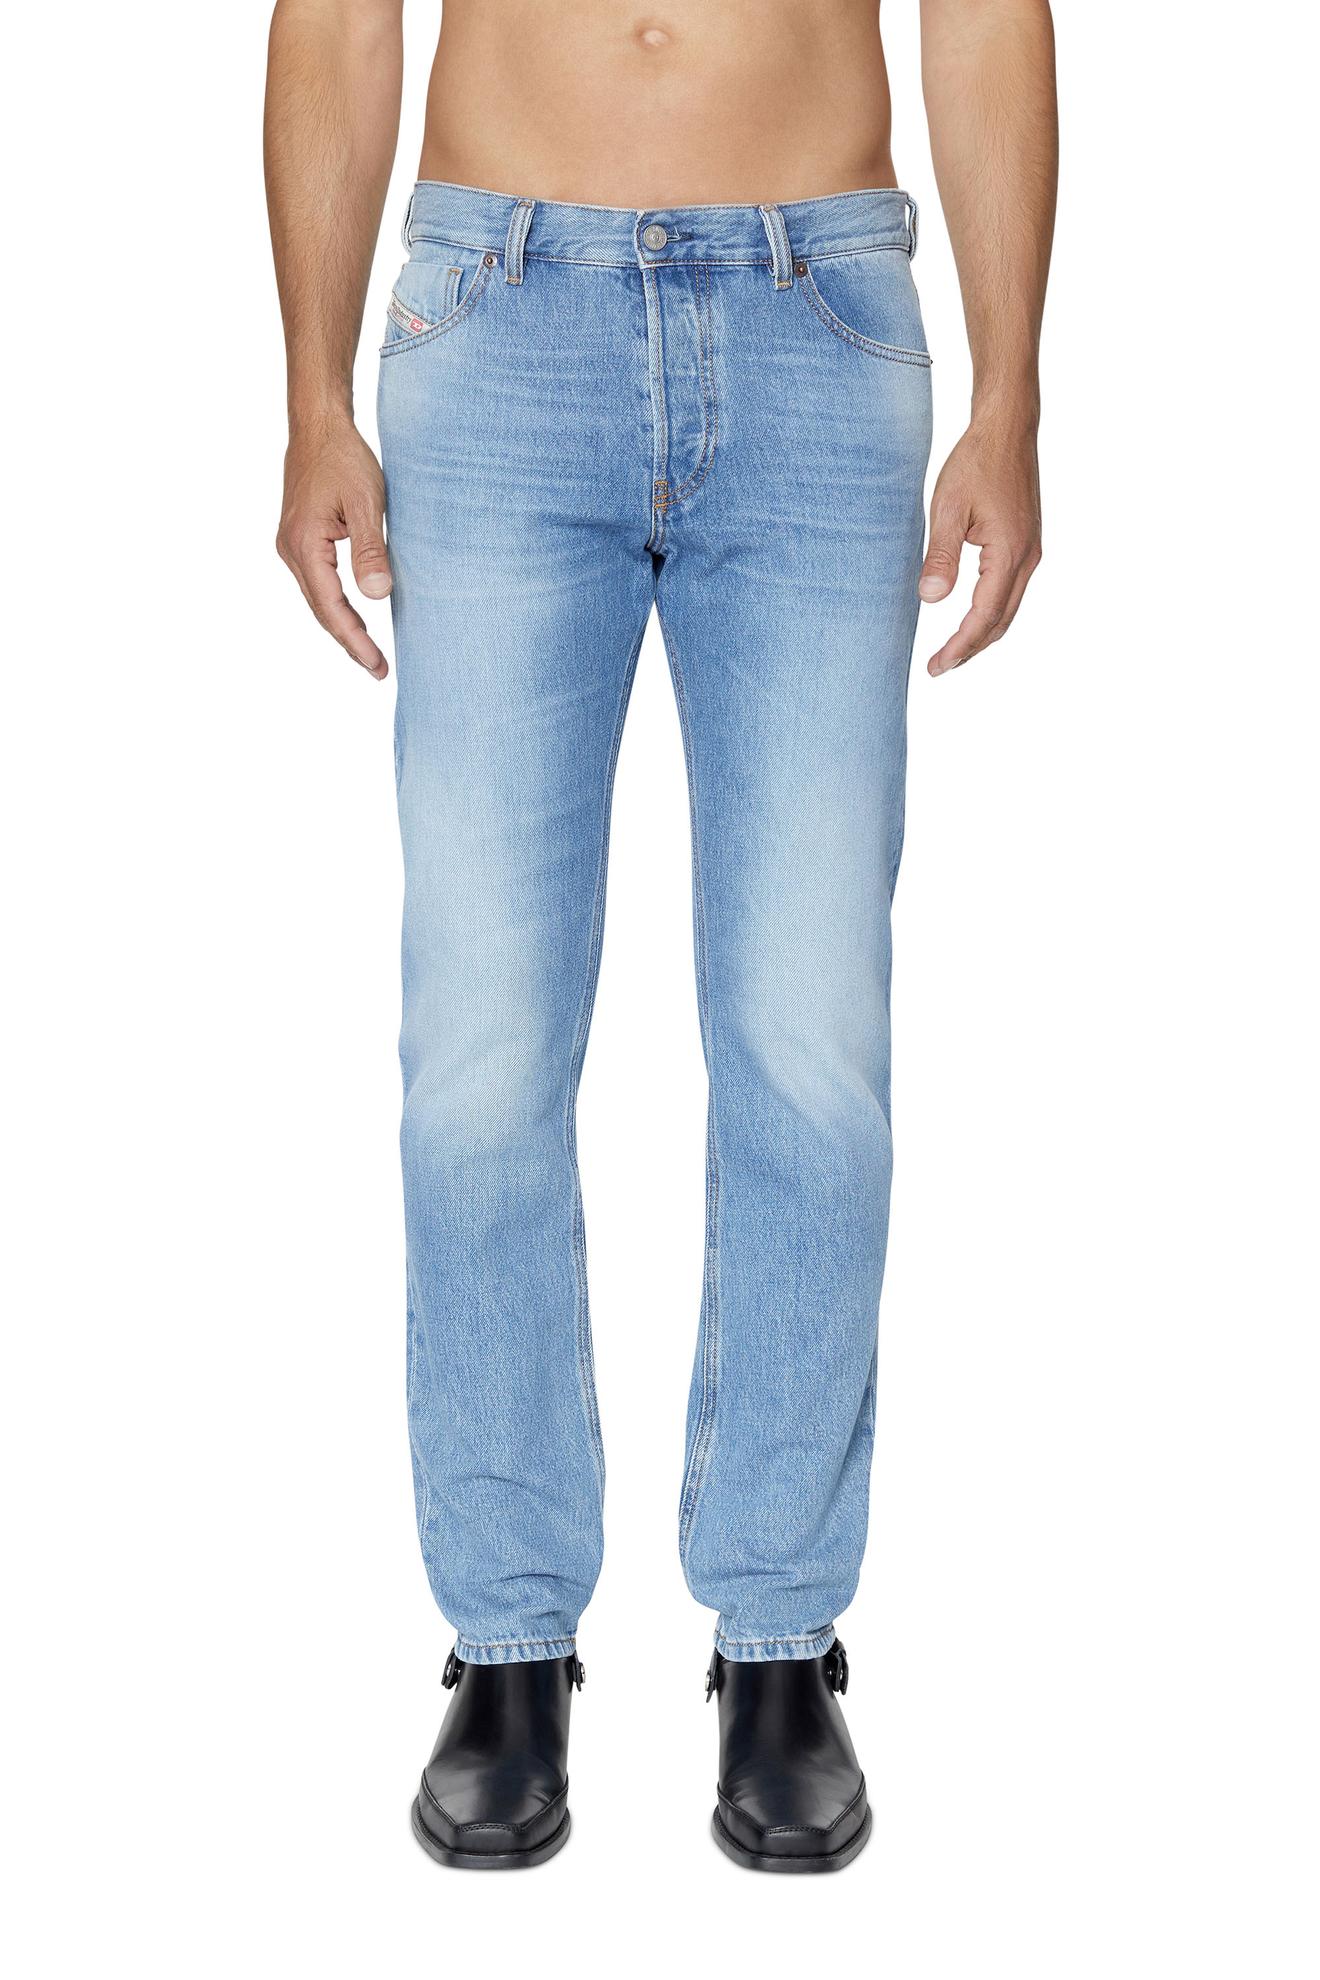 Προσφορά Straight Jeans - 1995 D-Sark για 120€ σε DIESEL